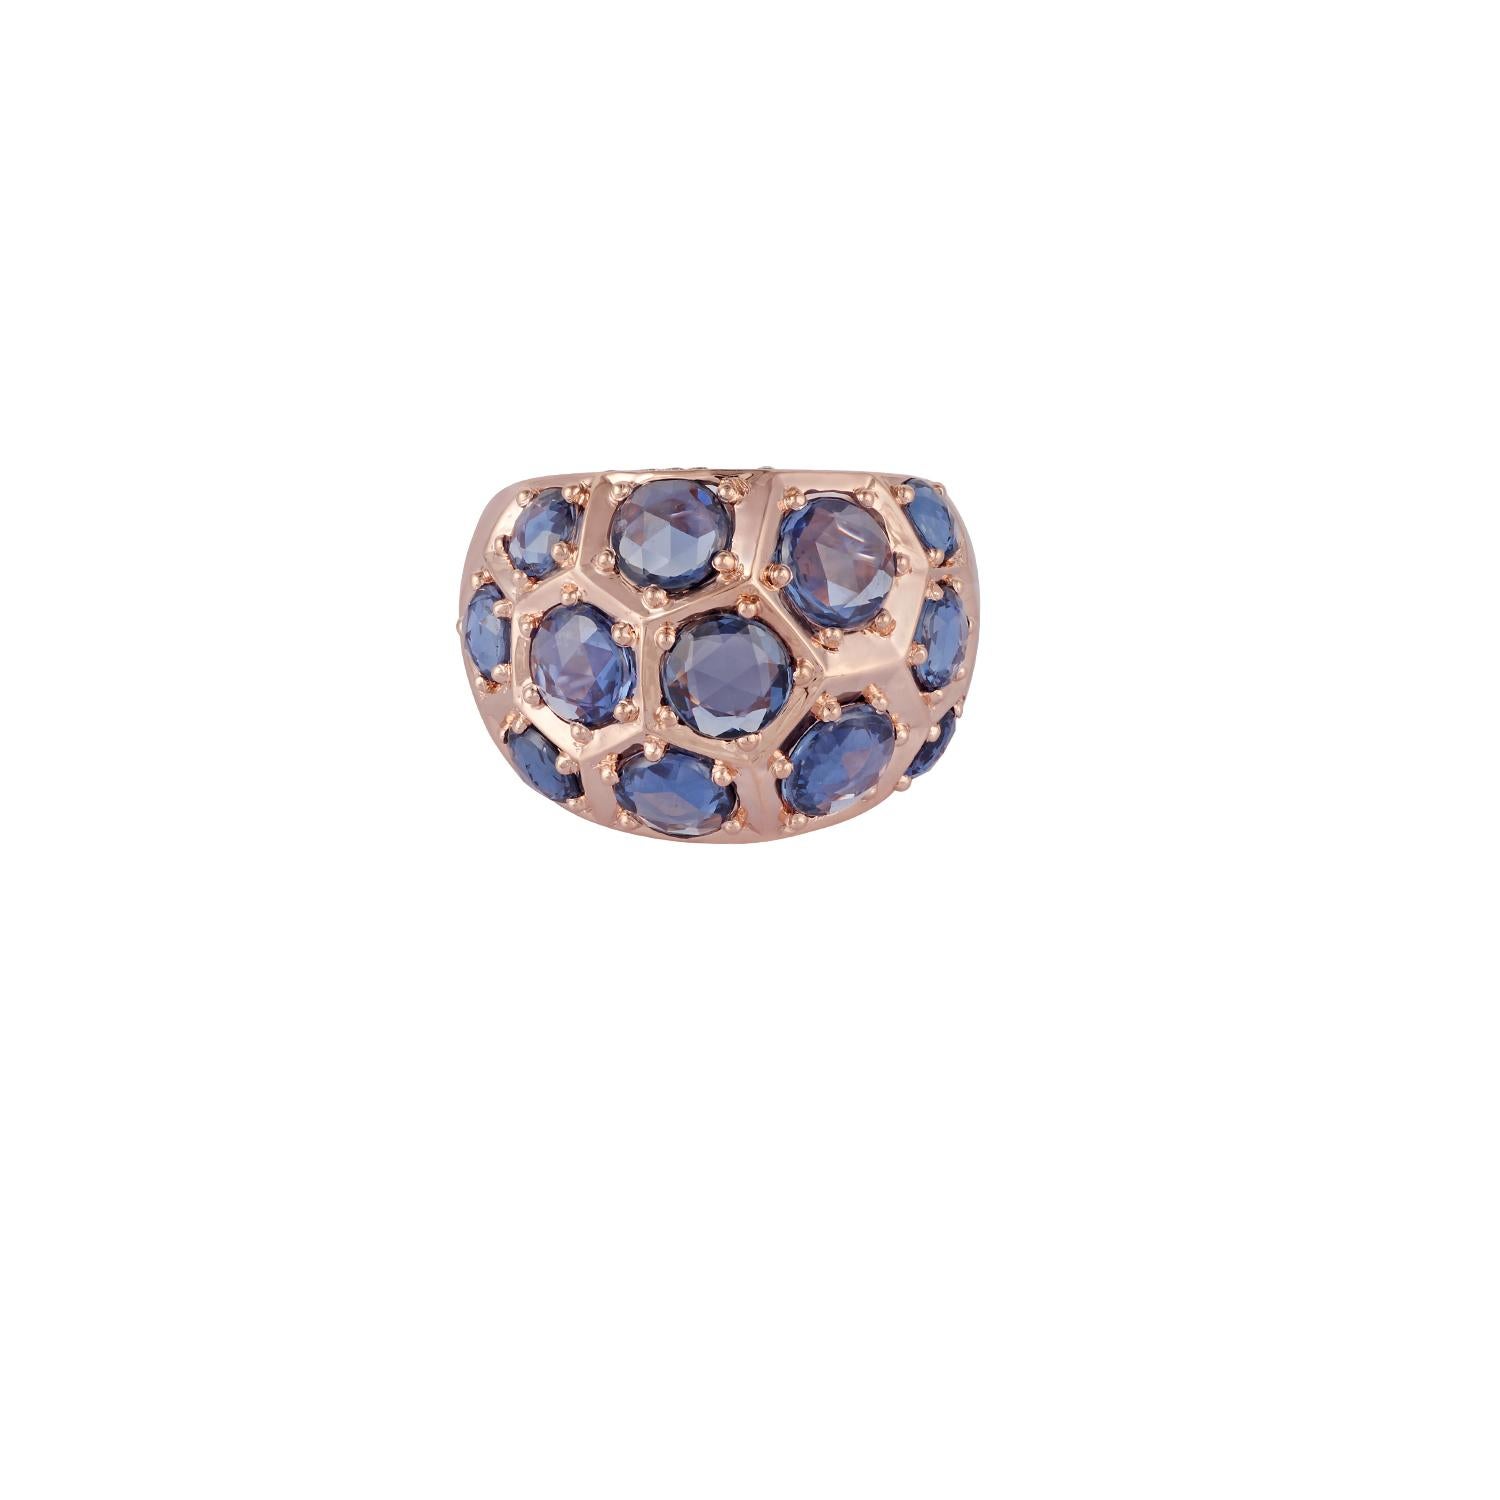 Dies ist ein exklusiver Saphir & Diamant-Ring in 18k Roségold mit 12 Stück rund geformt Rose geschnitten Saphire Gewicht 7,77 Karat mit 50 Stück rund geformt Diamanten Gewicht 0,25 Karat, diese gesamte Ring in 18k Roségold Gewicht 11,56 Gramm,